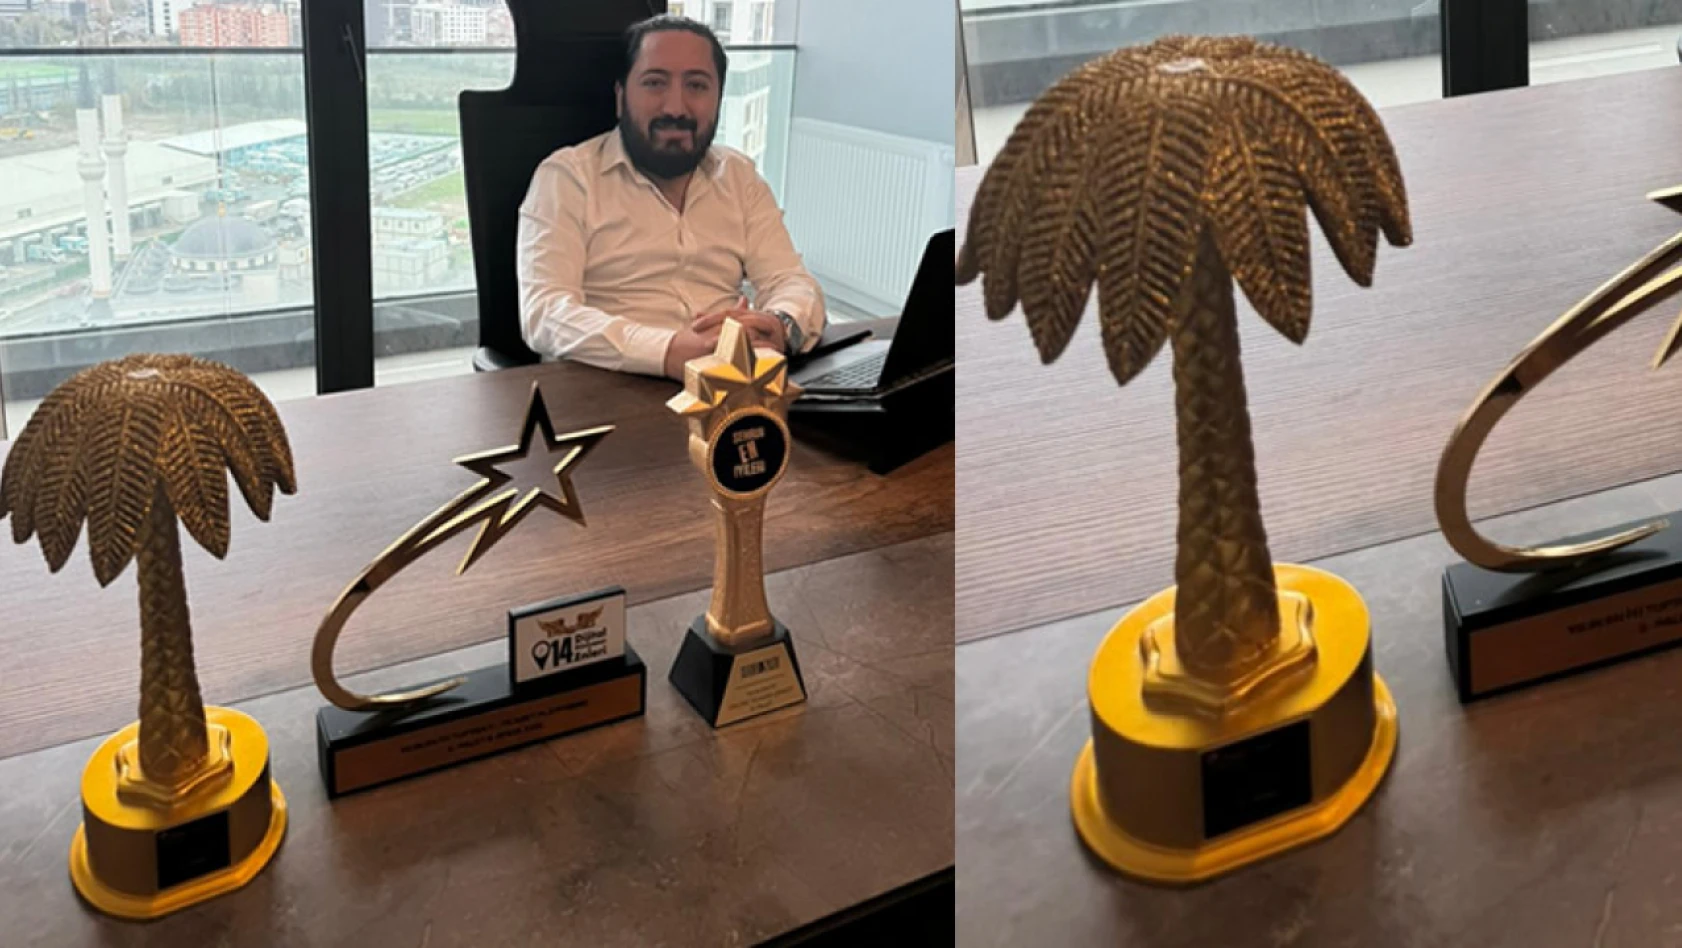 İş insanı Aykul Esel, E-Palet Şirketler Grubu ile Golden Palm Awards ödül törenin de yılın en iyi toptan e-ticaret şirketi seçildi